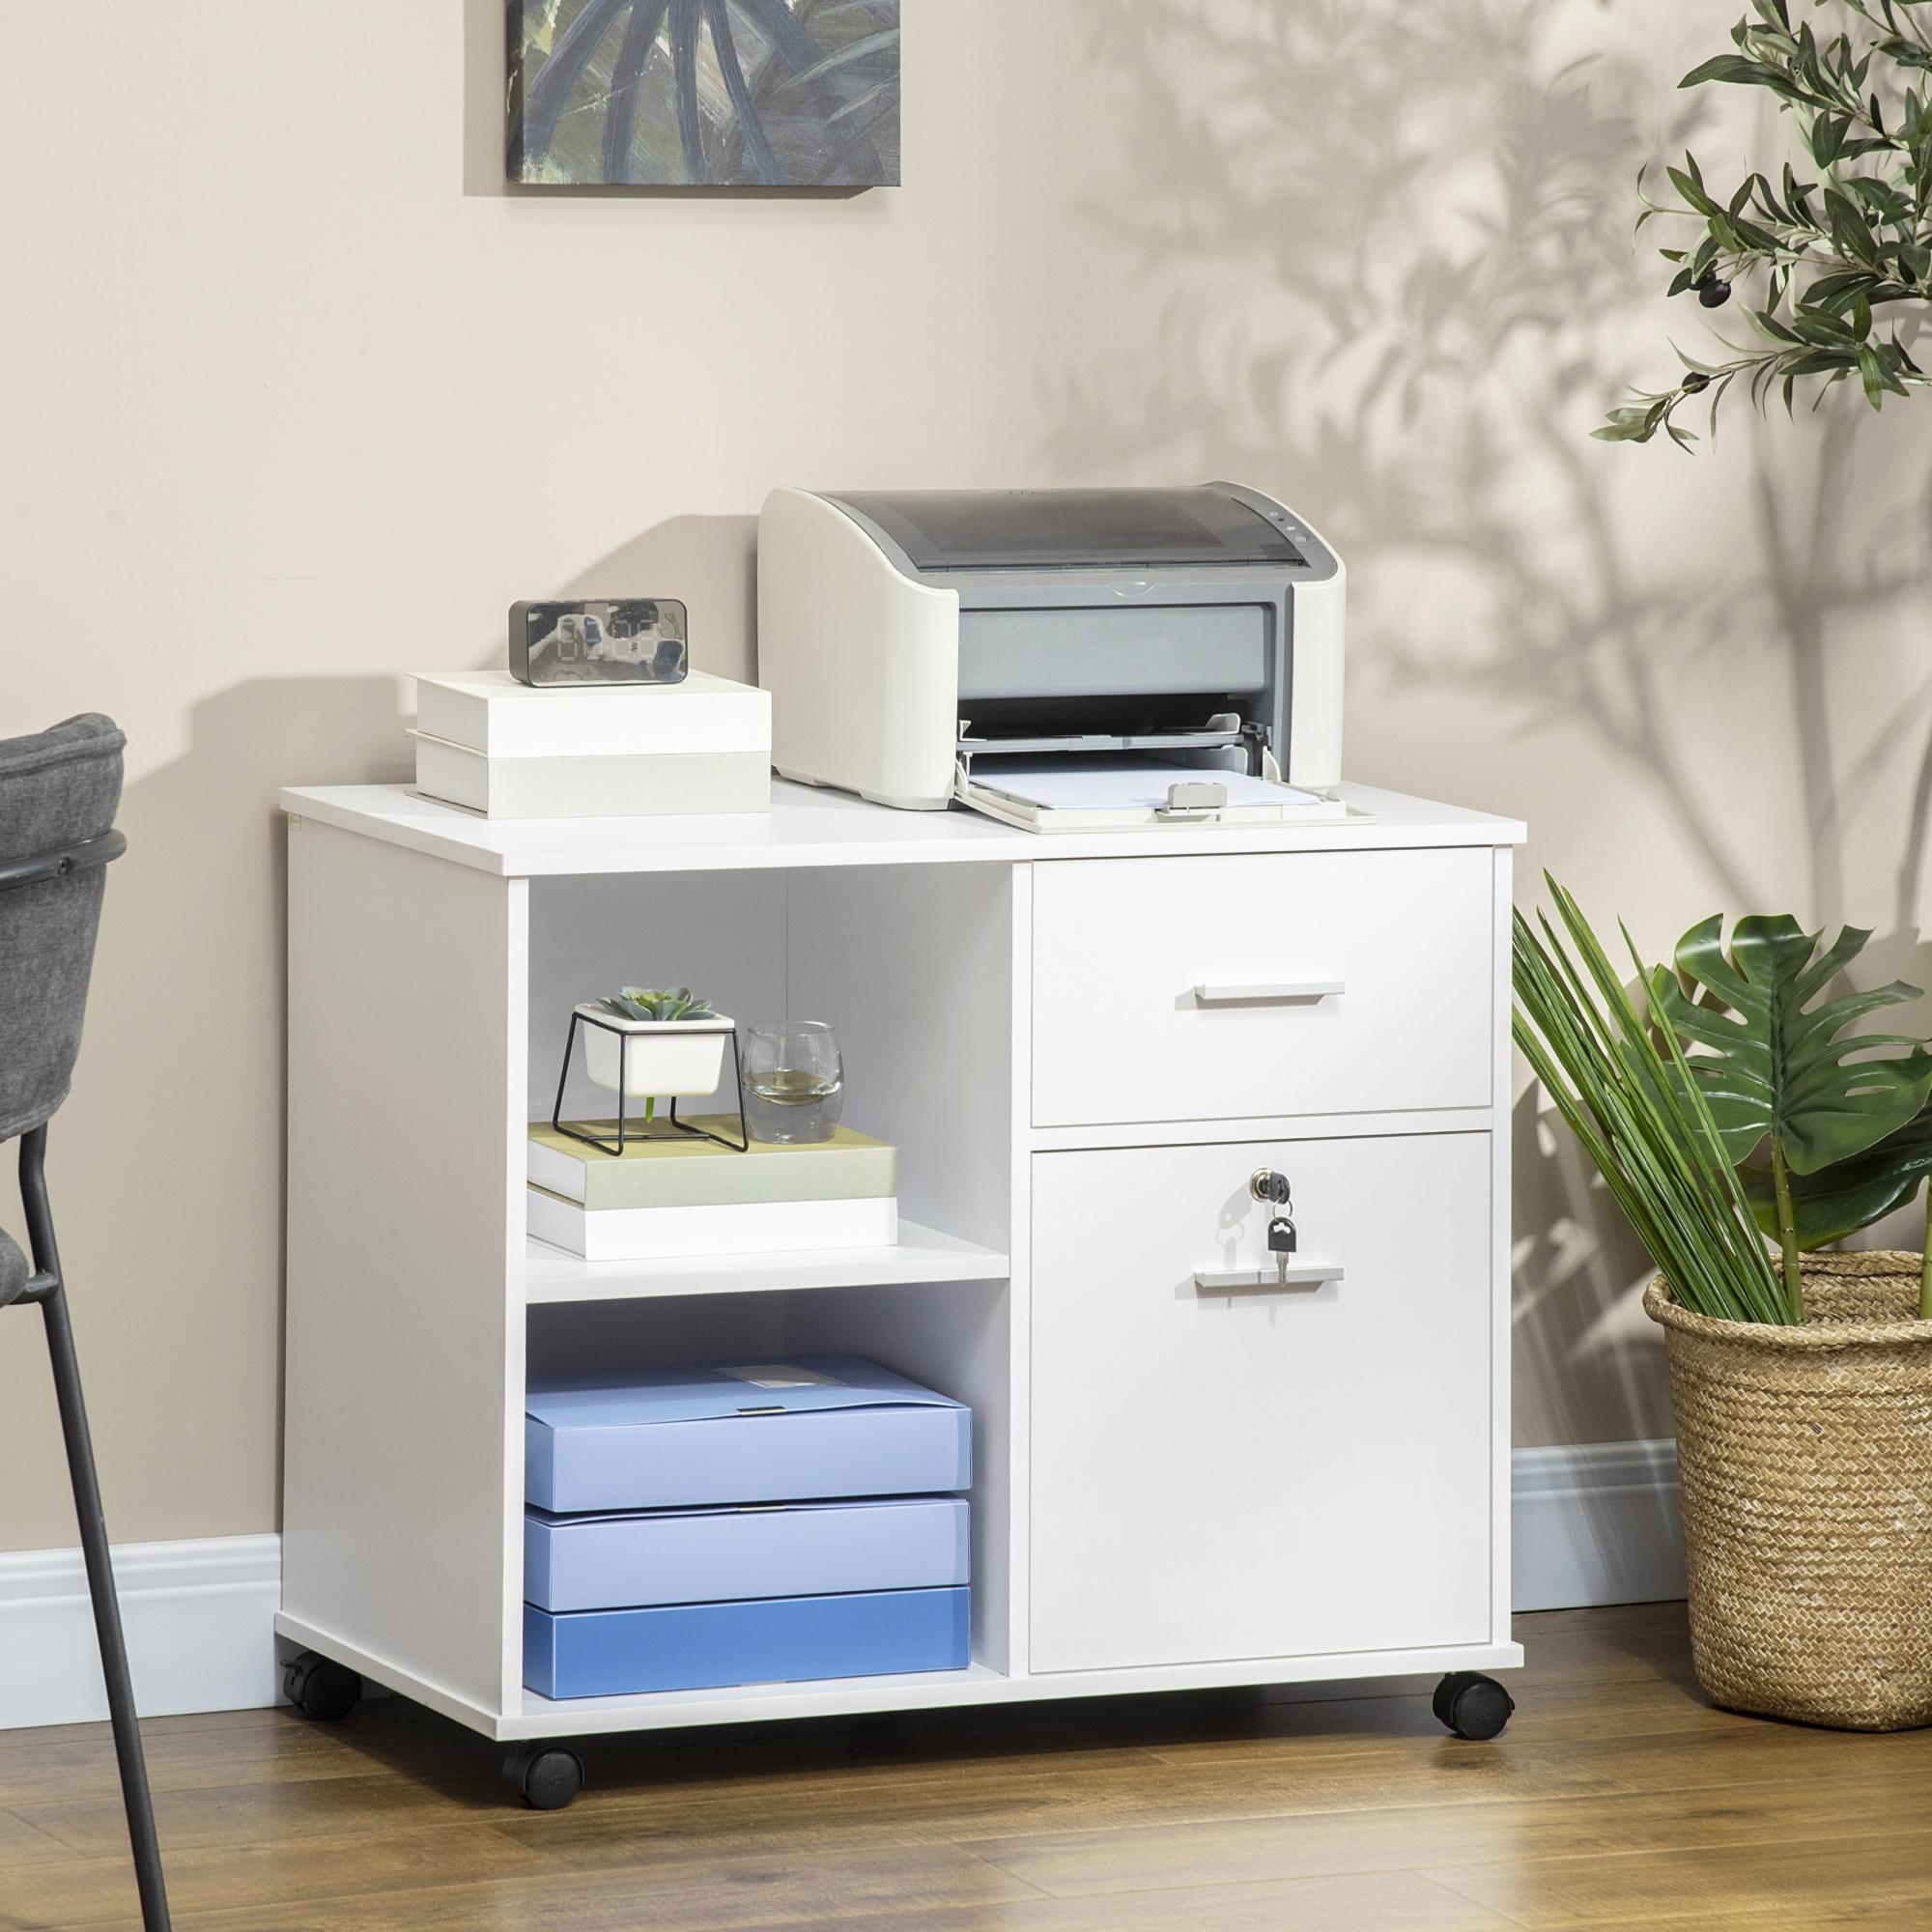 Support d'imprimante organiseur bureau caisson avec 2 tiroirs dont 1 verrouillable avec clé 2 niches grand plateau dim 80L x 40l x 66,5H cm blanc